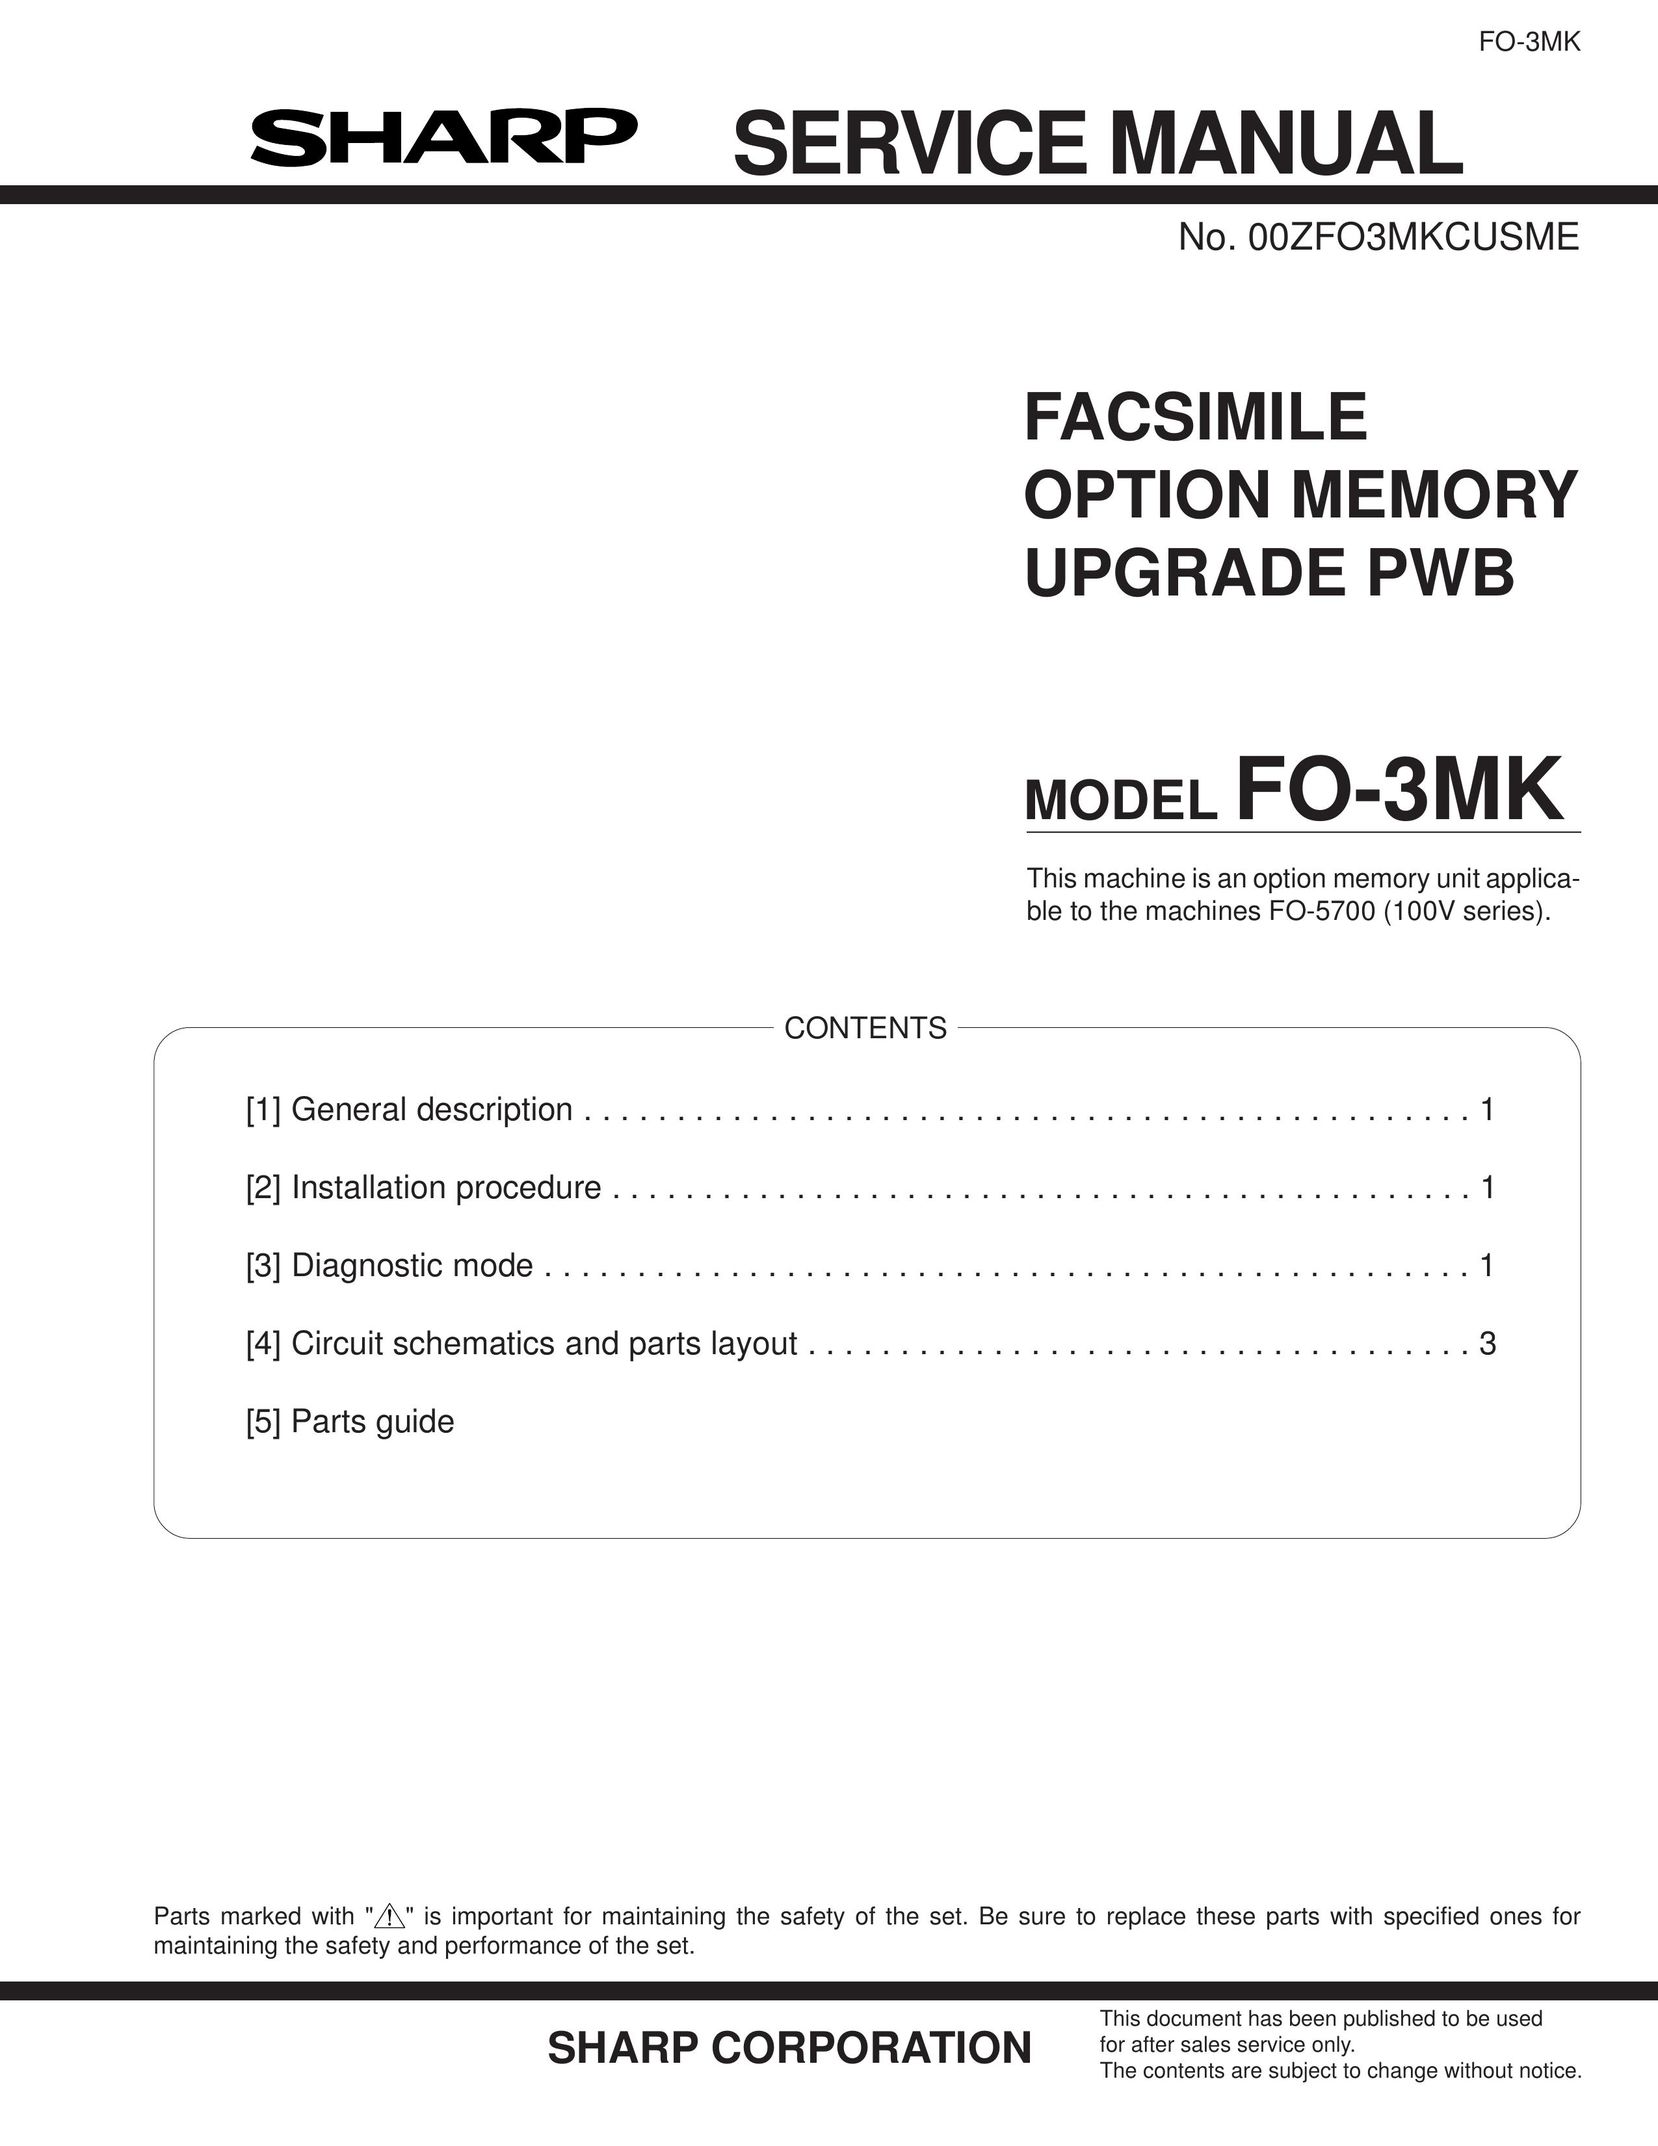 Sharp FO-3MK Fax Machine User Manual